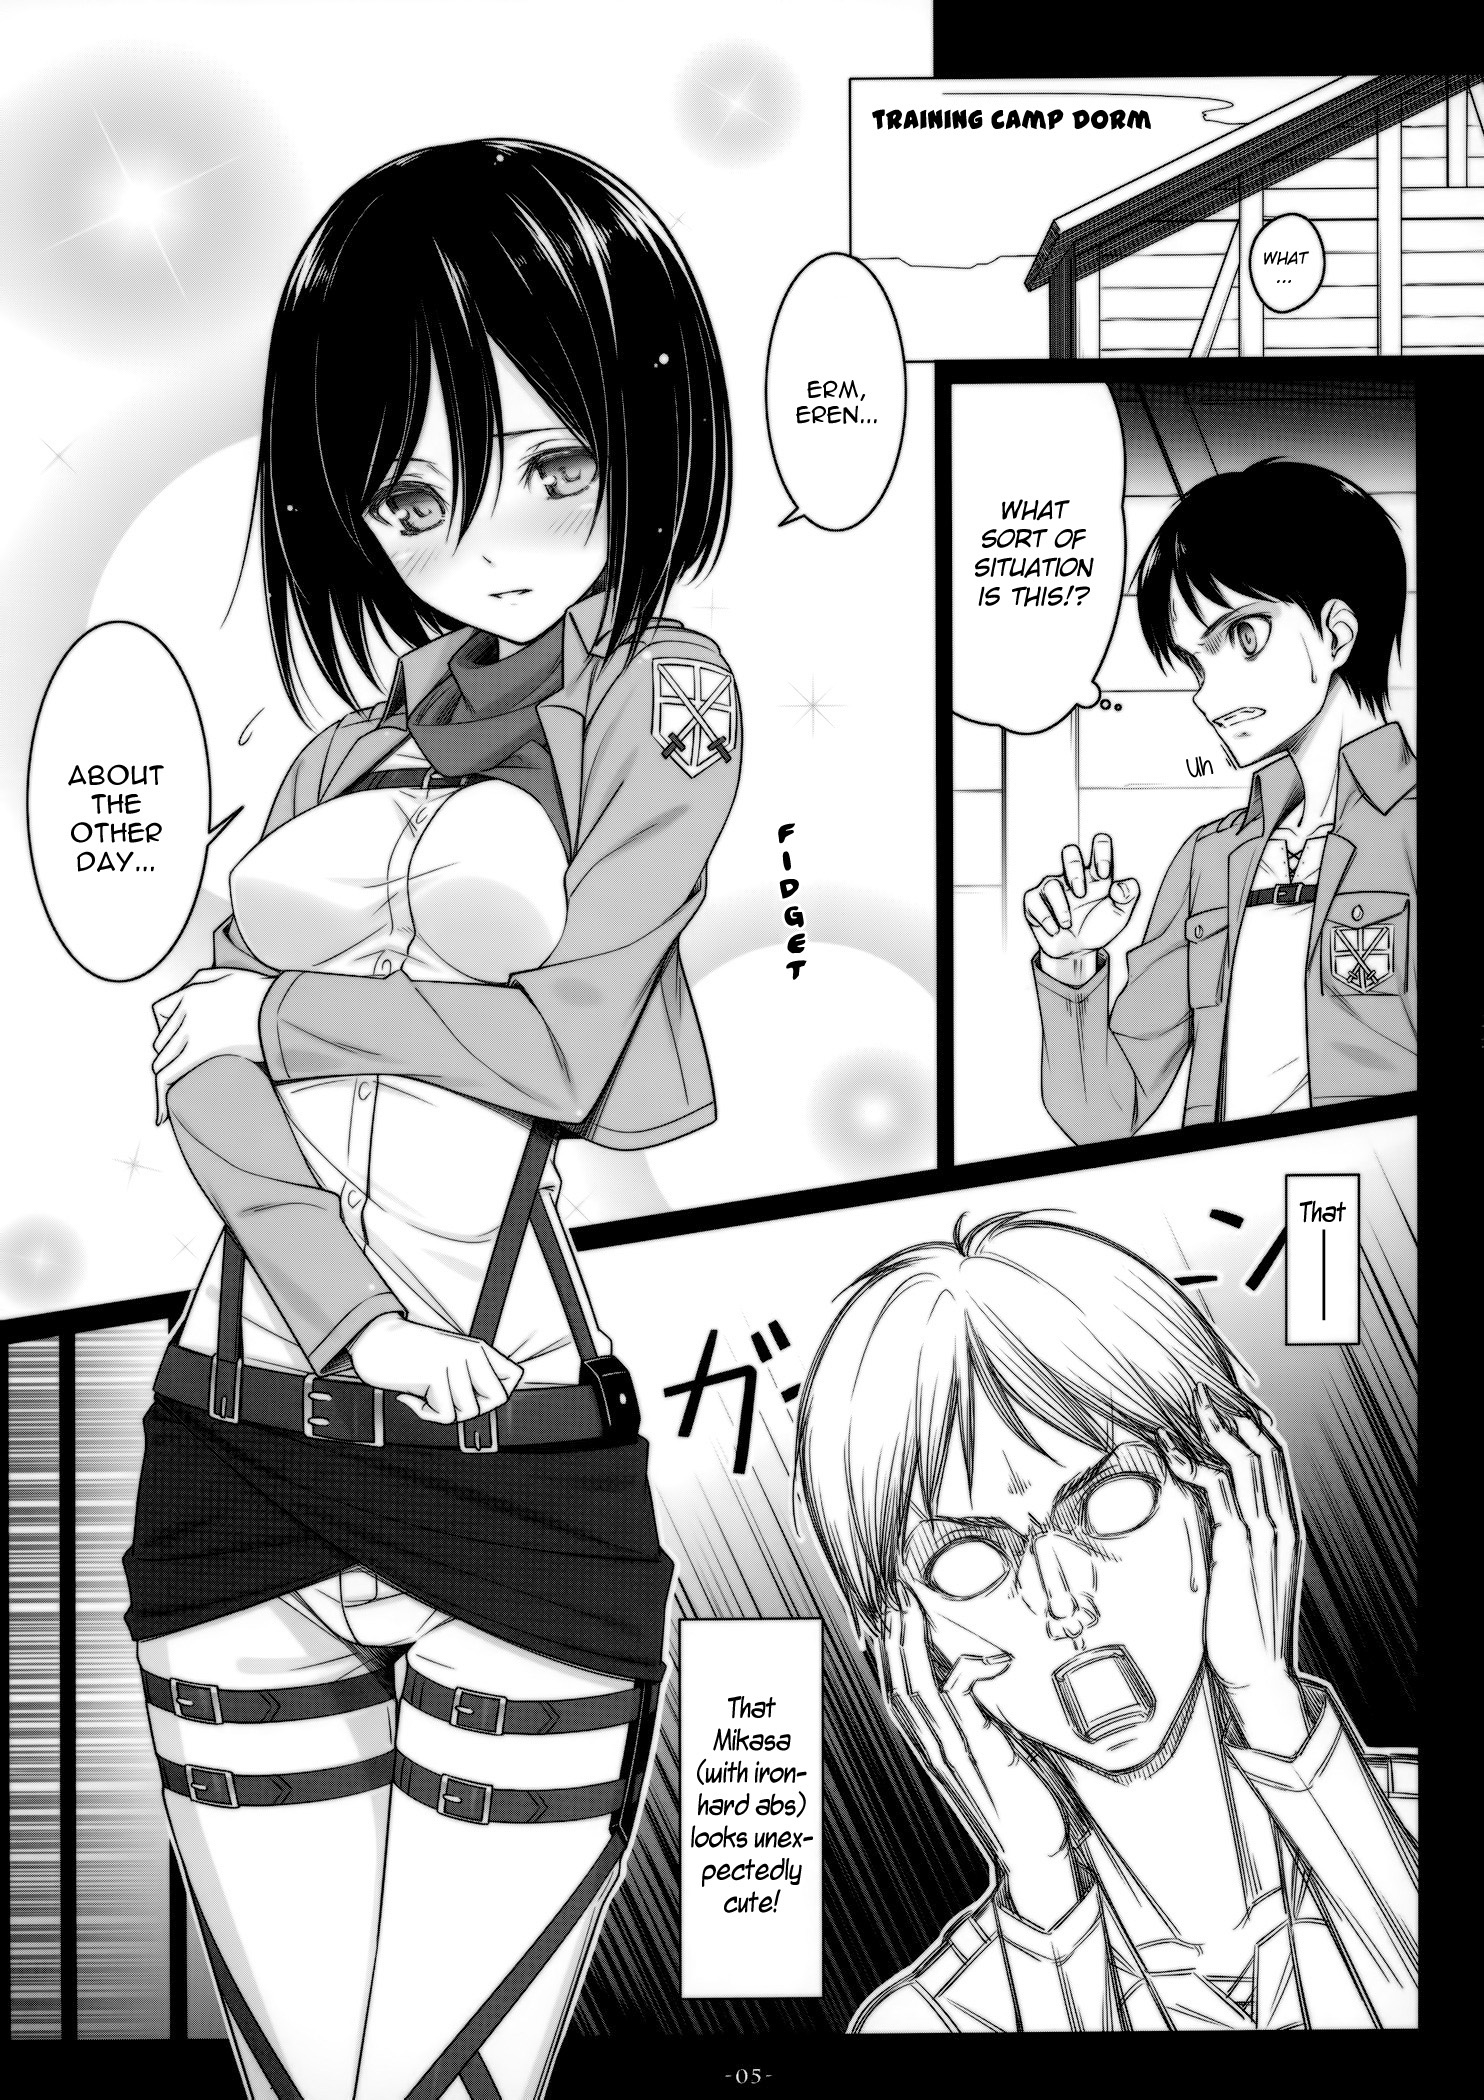 Mikasa porn manga